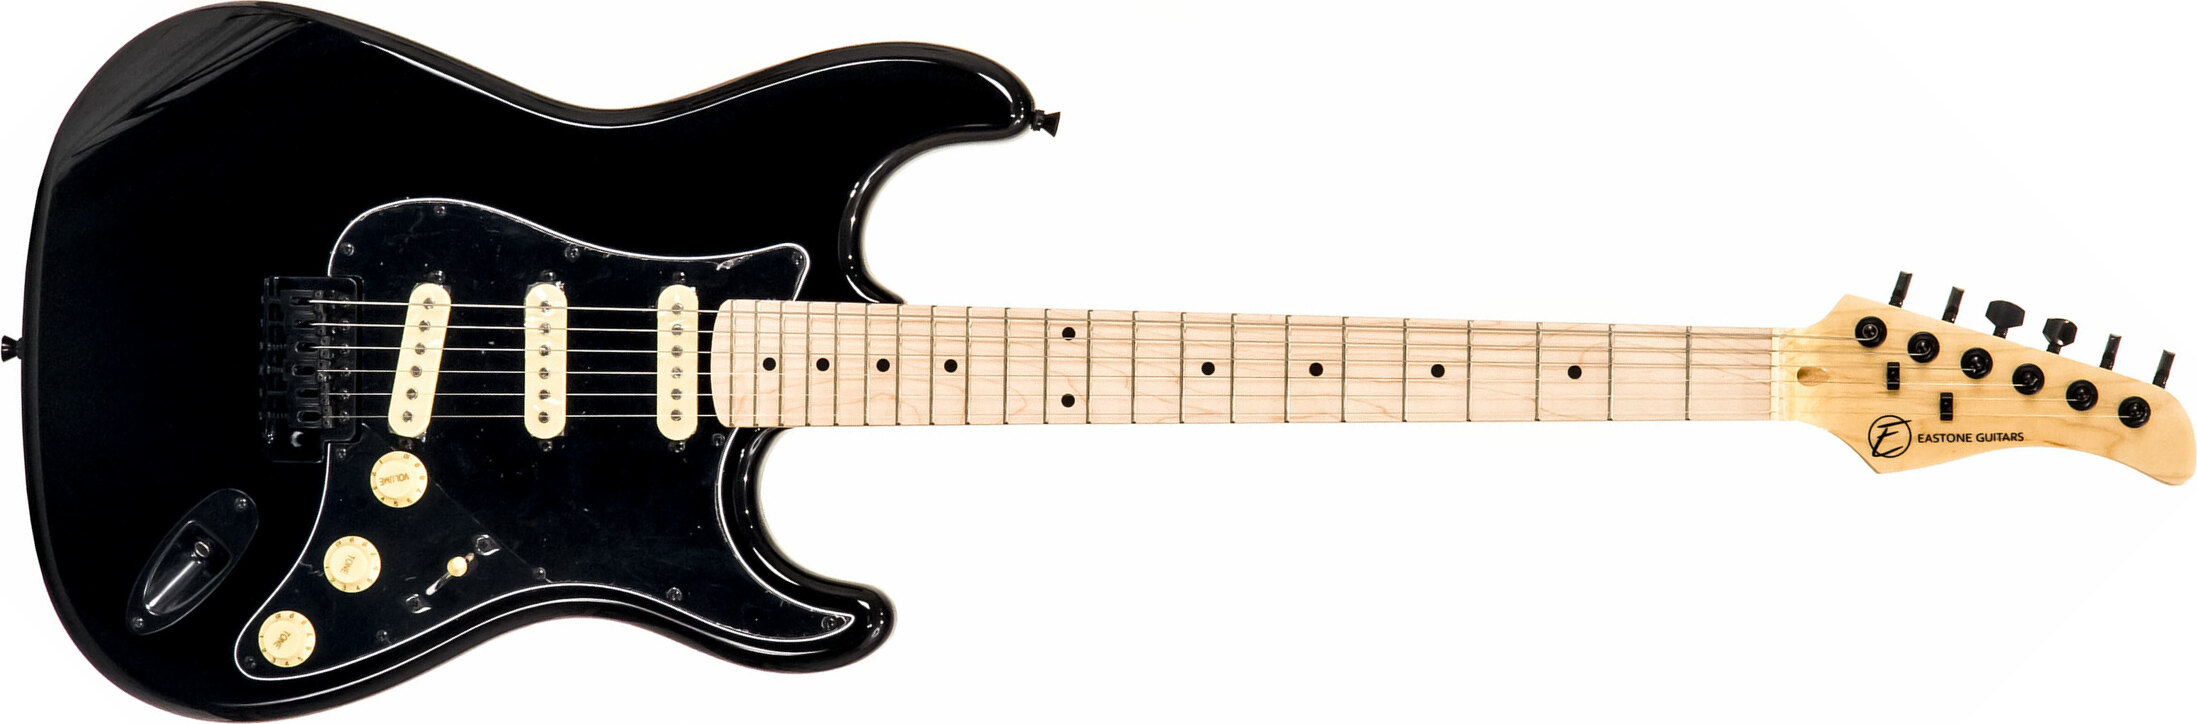 Eastone Str70 Gil Sss Trem Mn - Black - Guitare Électrique Forme Str - Main picture